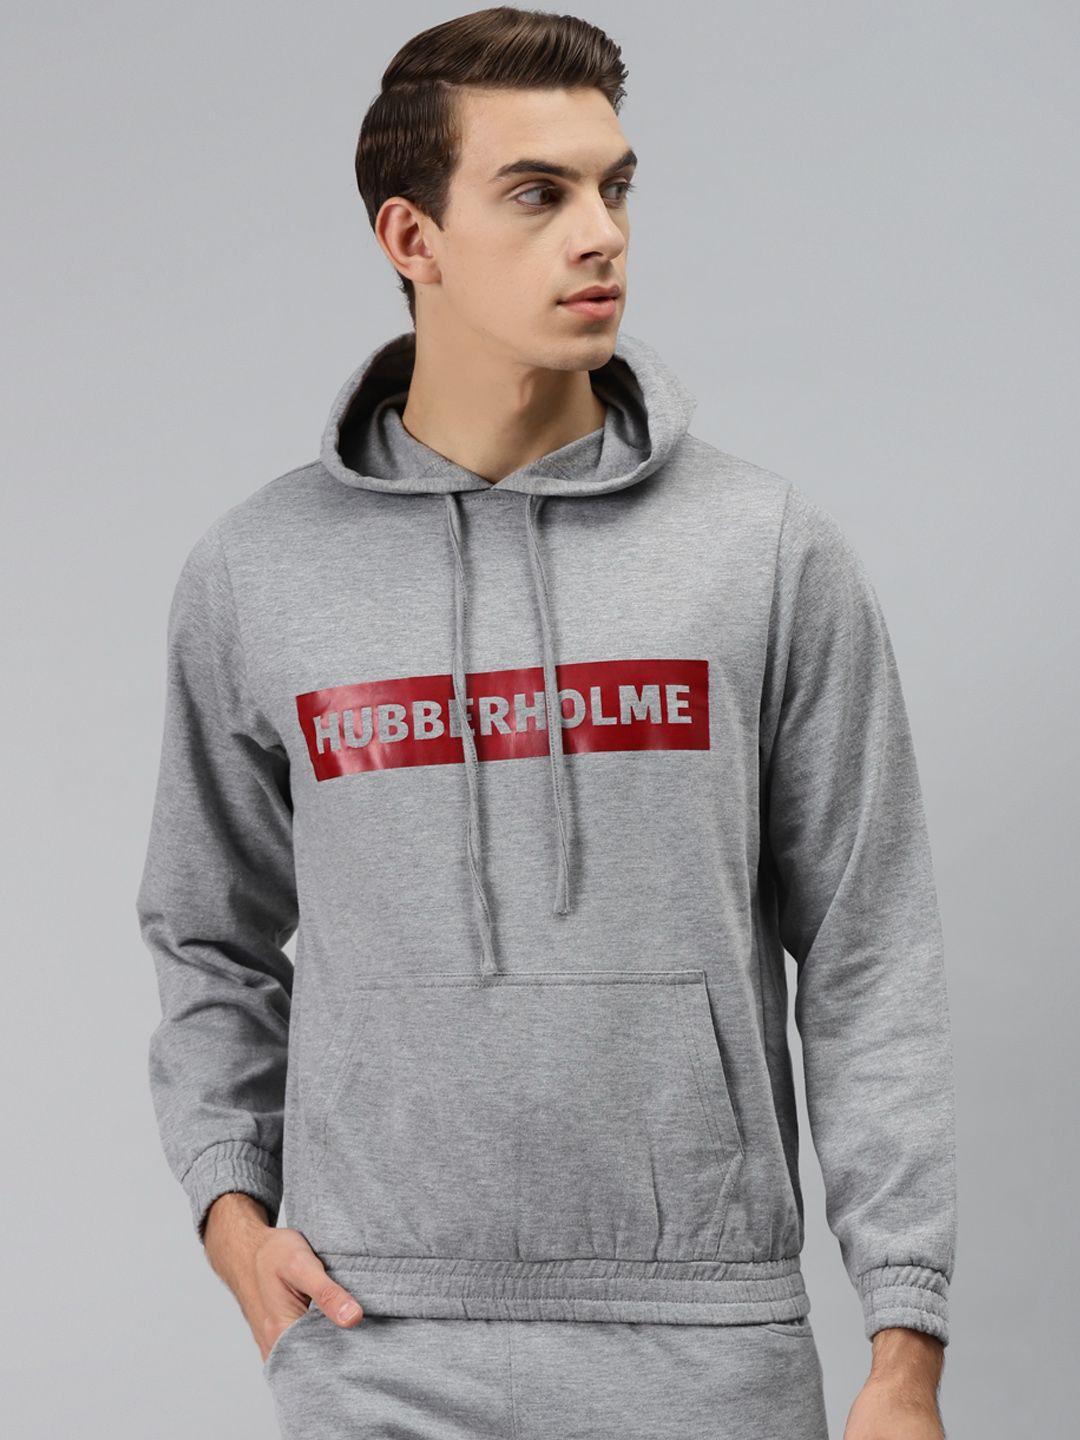 hubberholme-men-grey-printed-hooded-sweatshirt